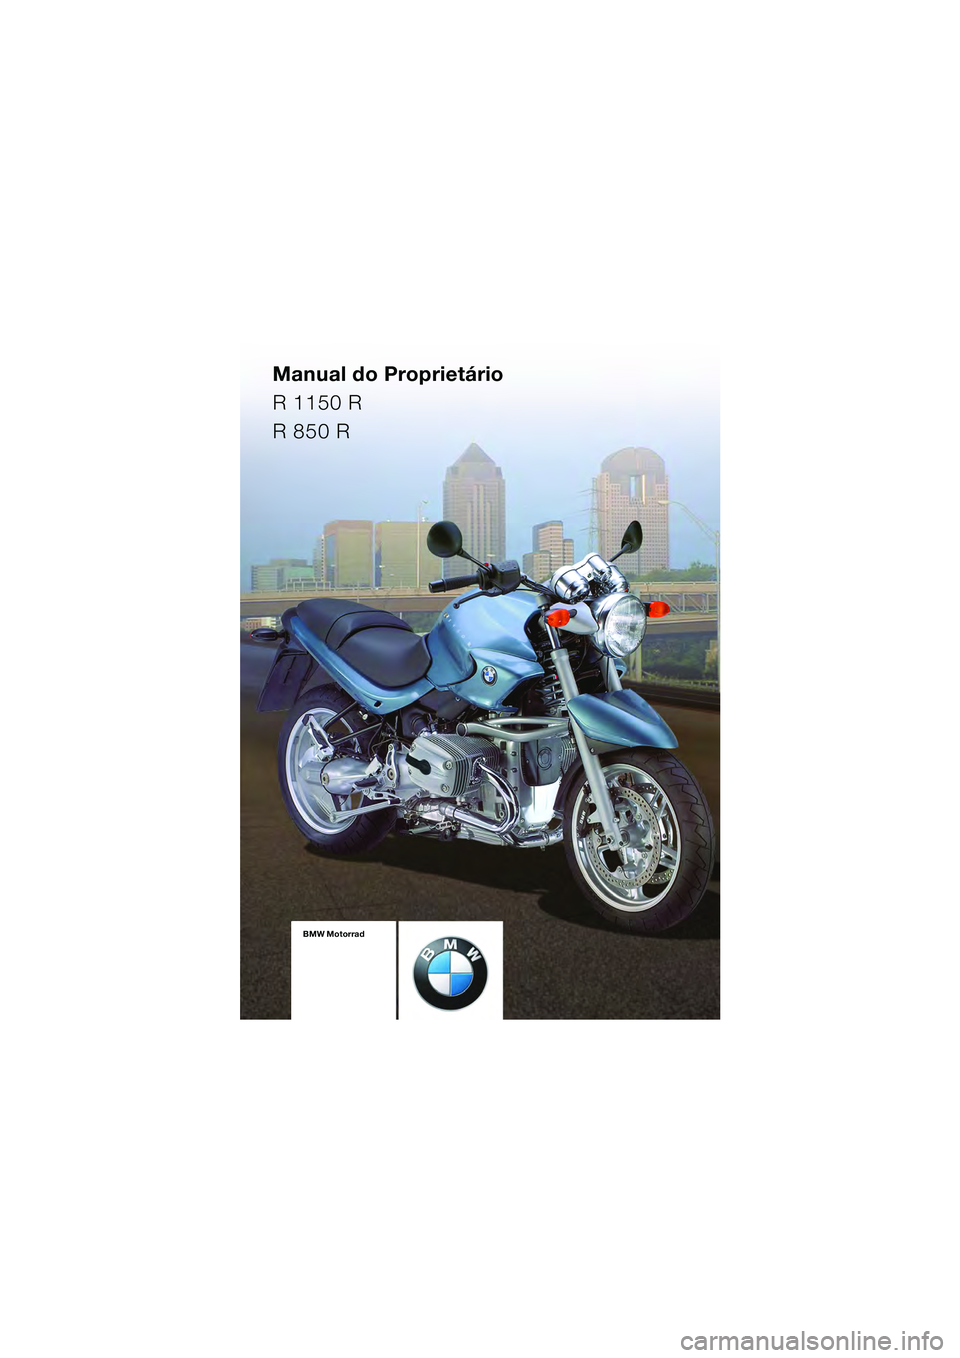 BMW MOTORRAD R 850 R 2004  Manual do condutor (in Portuguese) Manual do Proprietário
R 1150 R
R 850 R
BMW Motorrad
Documentação 
de bordo
incluido o  
Manual do  
Proprietário e o  
Instruções para  
a manutençãoBMW Motorrad
Documentação 
de bordo
incl